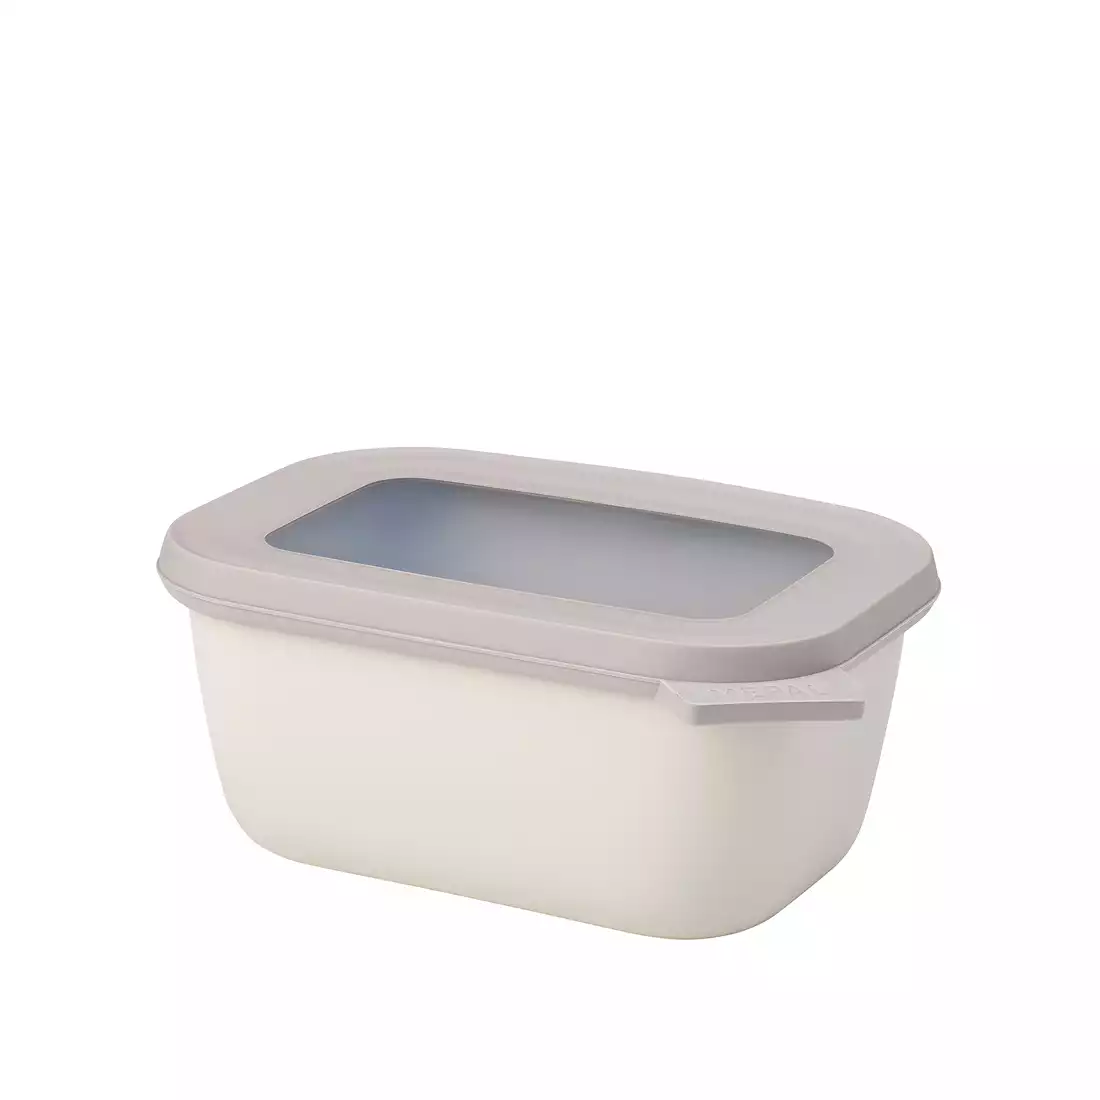 MEPAL CIRQULA rectangular bowl 750 ml, nordic white